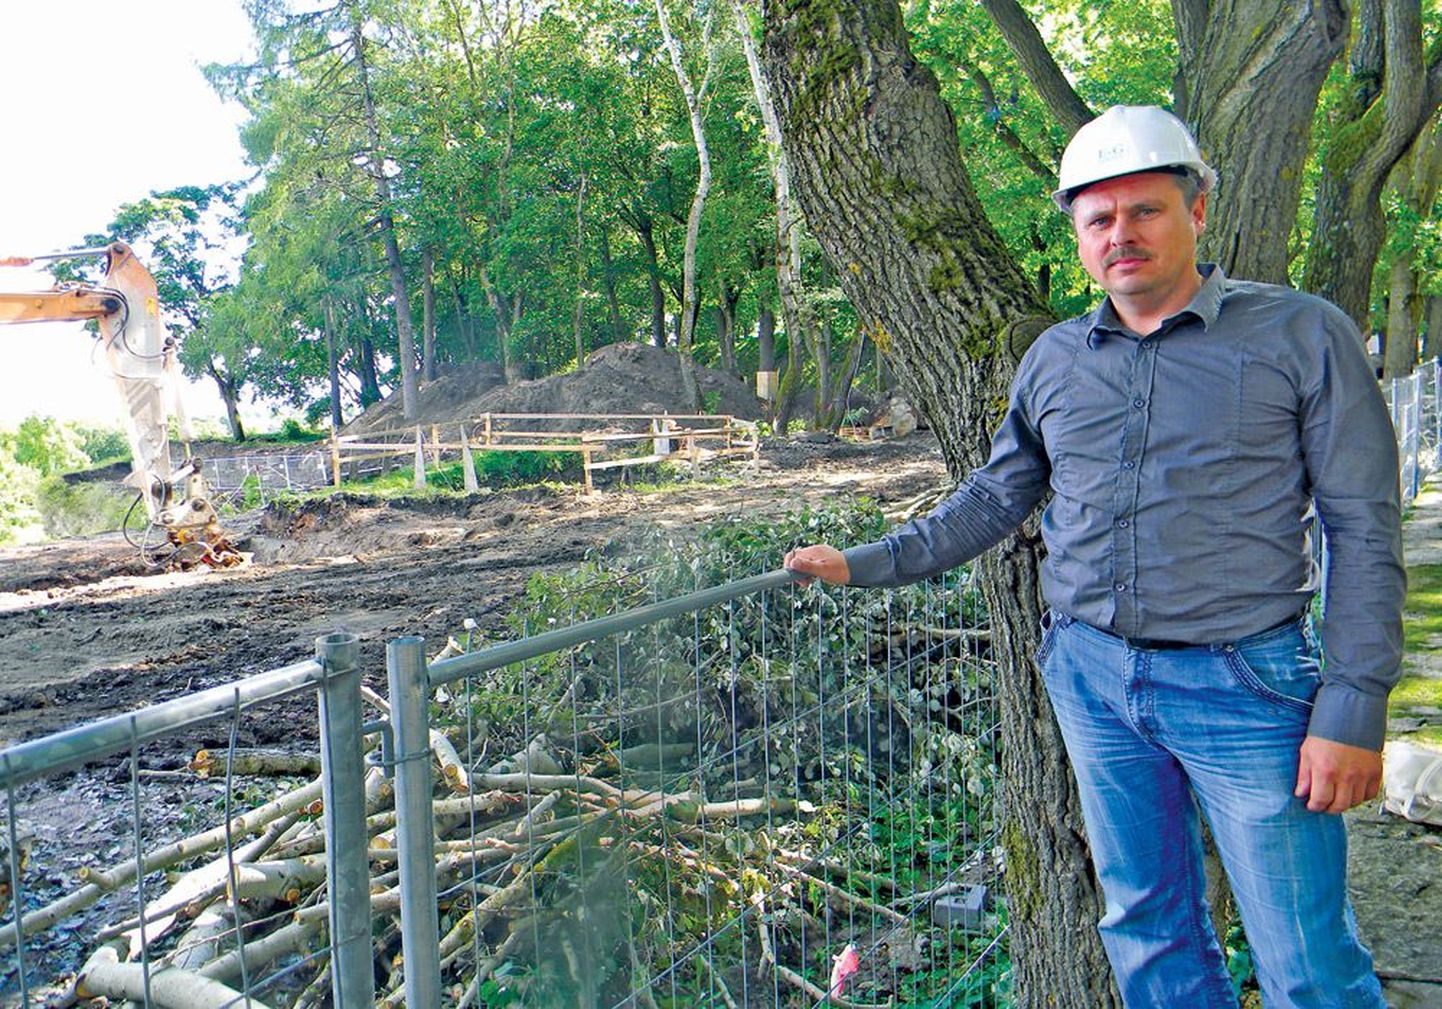 Руководитель проекта реконструкции Юрий Пароварт говорит, что основной причиной разрушений бастиона были деревья Темного сада, в котором сейчас идут работы по прокладке более глубокой, до семи метров, дренажной системы бастиона.